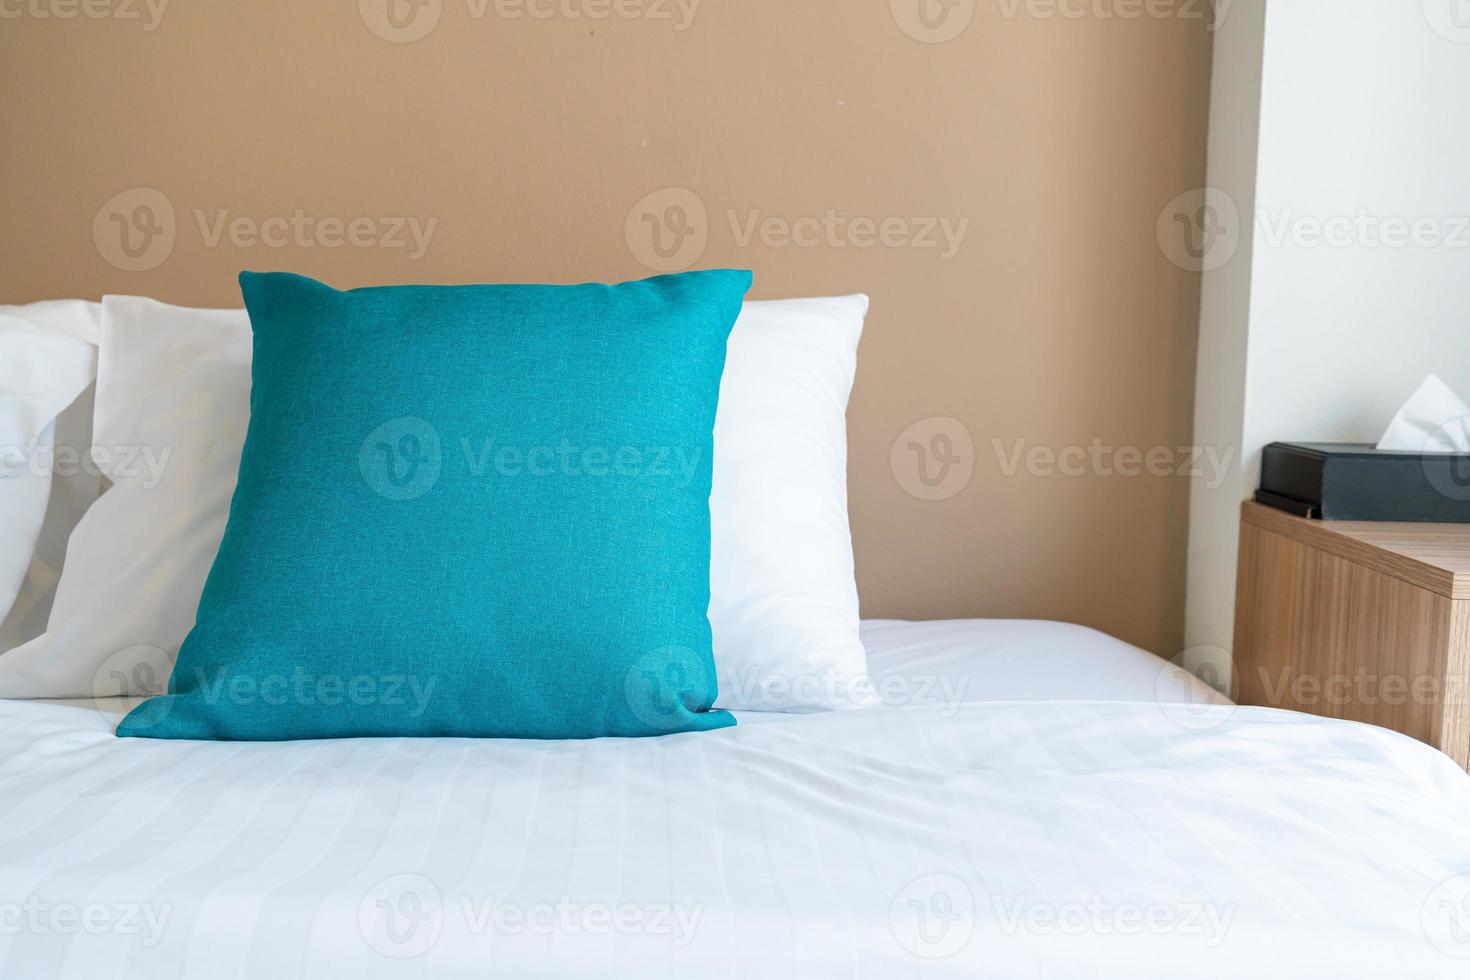 mooie en comfortabele kussens decoratie op bed in slaapkamer foto